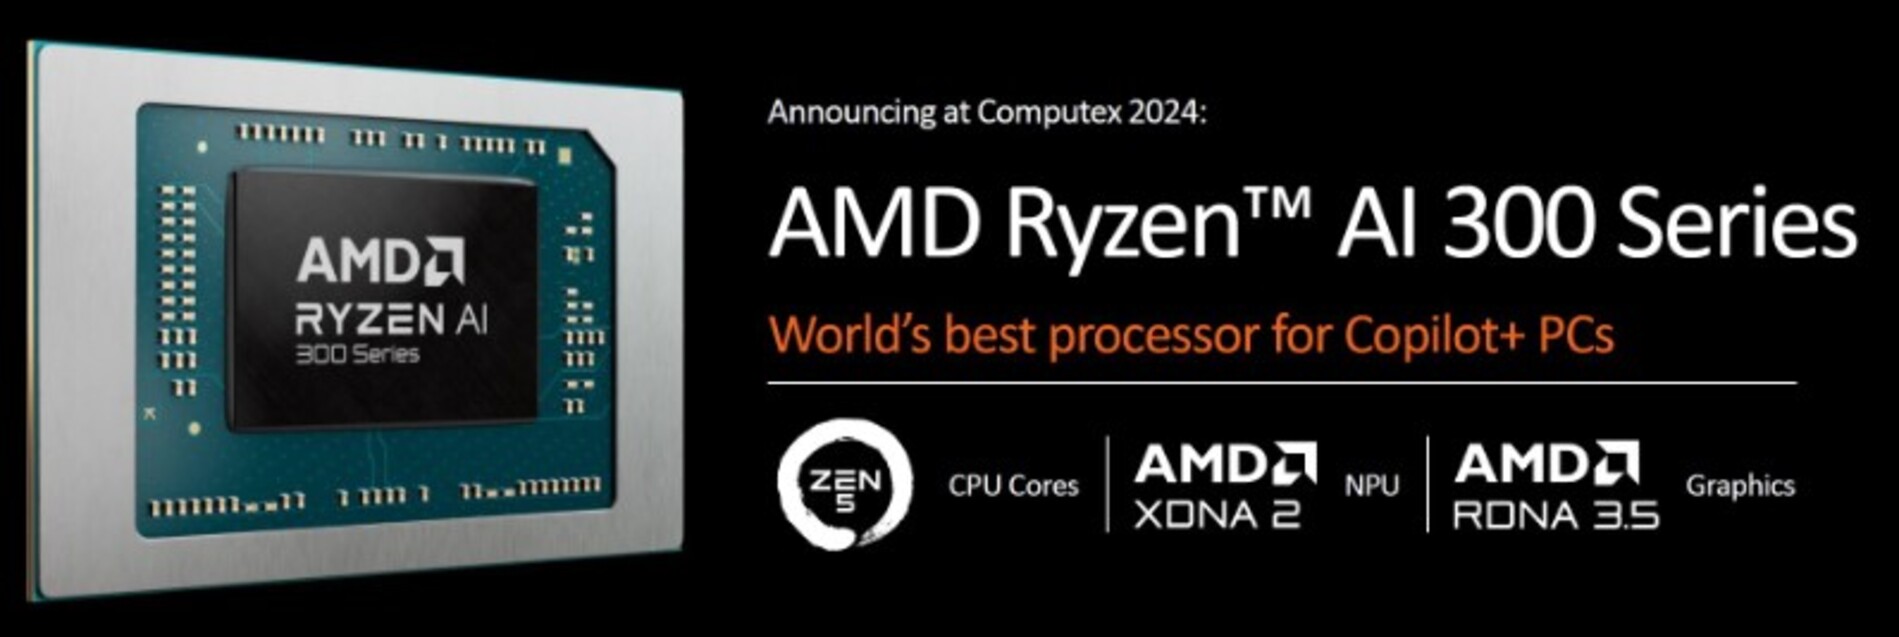 AMD представила нові мобільні APU лінійки Ryzen AI 300 з топовими моделями Ryzen AI 9